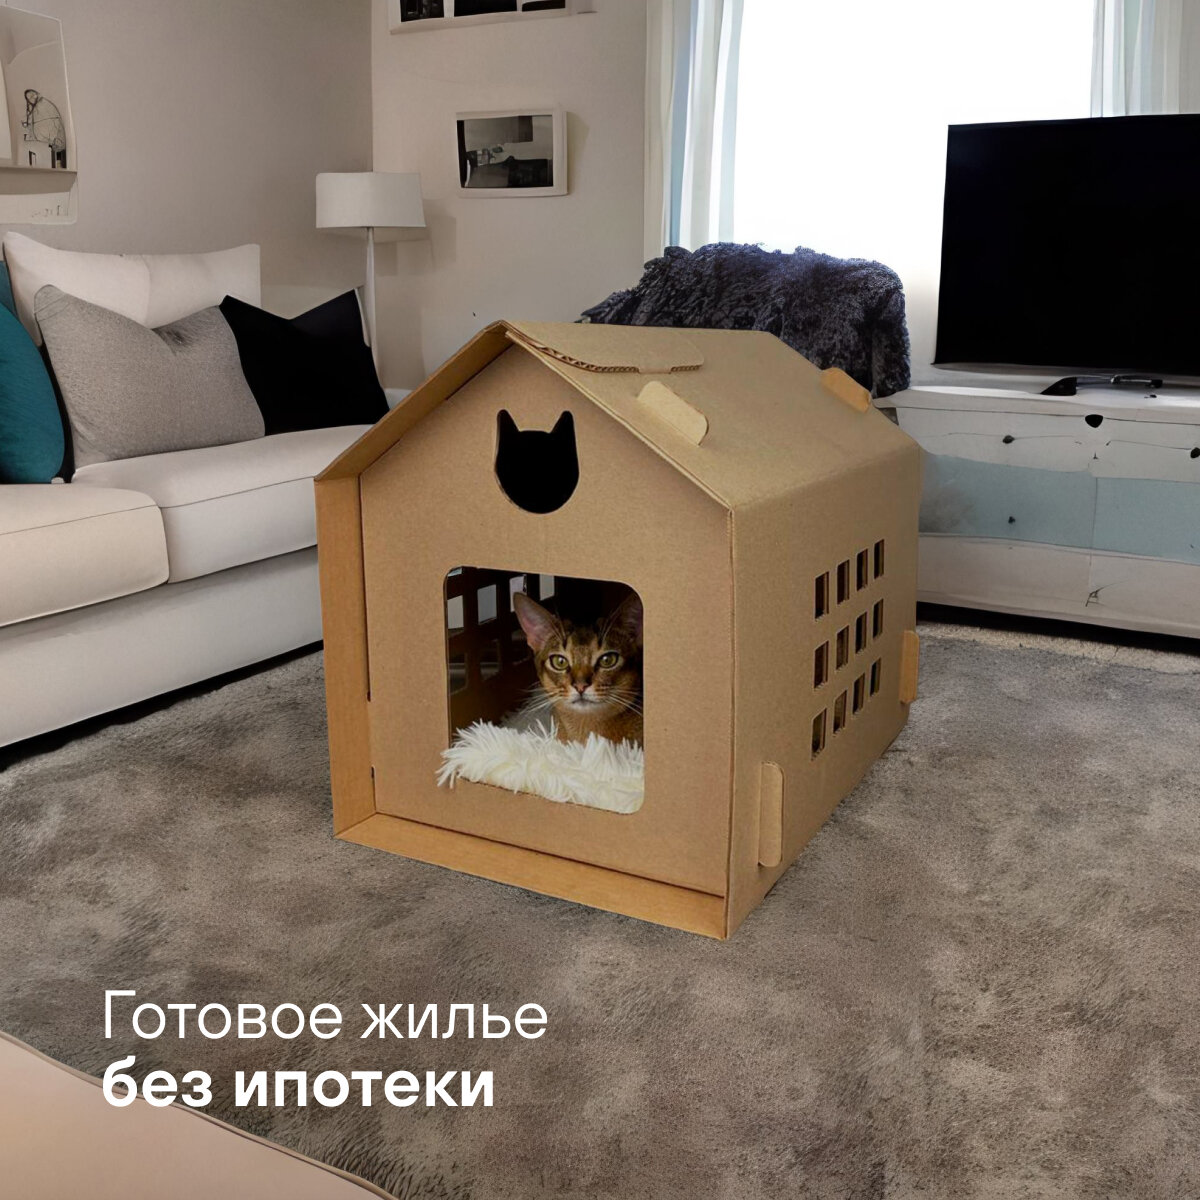 Домик для кошек и собак из картона BOXY китхаус, лежанка для кошек, гофрокартон, бурый цвет, 35х50х41 см, 1 шт. в комплекте. - фотография № 4